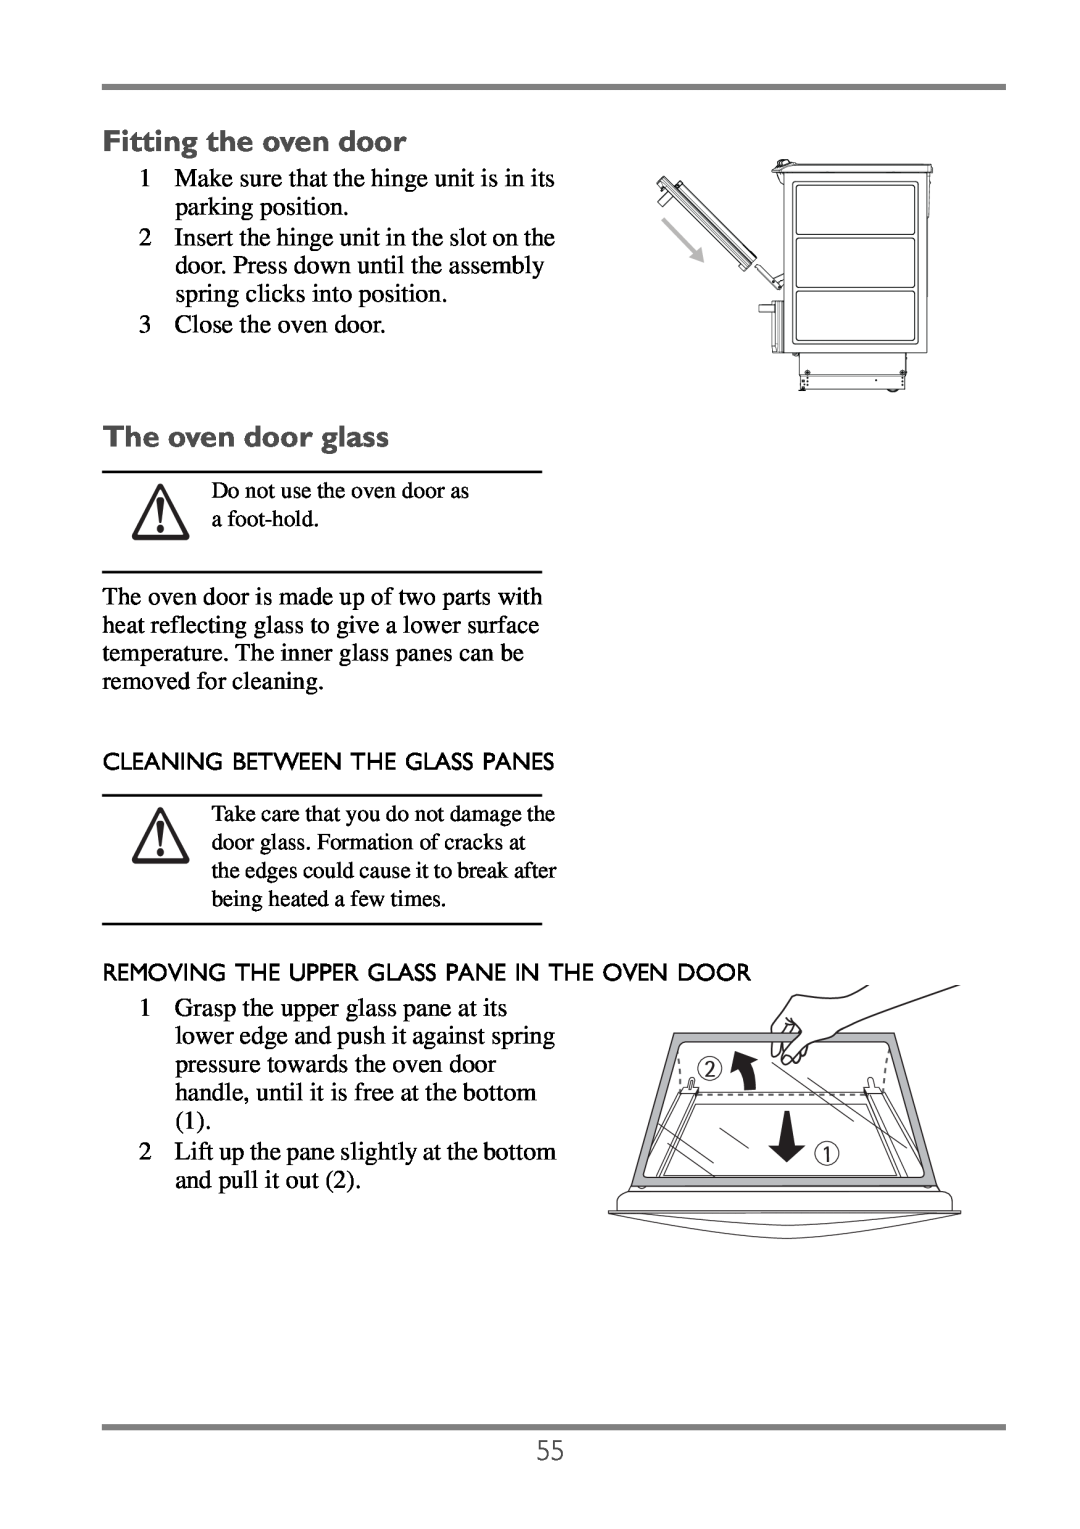 Electrolux EKC60752 user manual Fitting the oven door, The oven door glass 